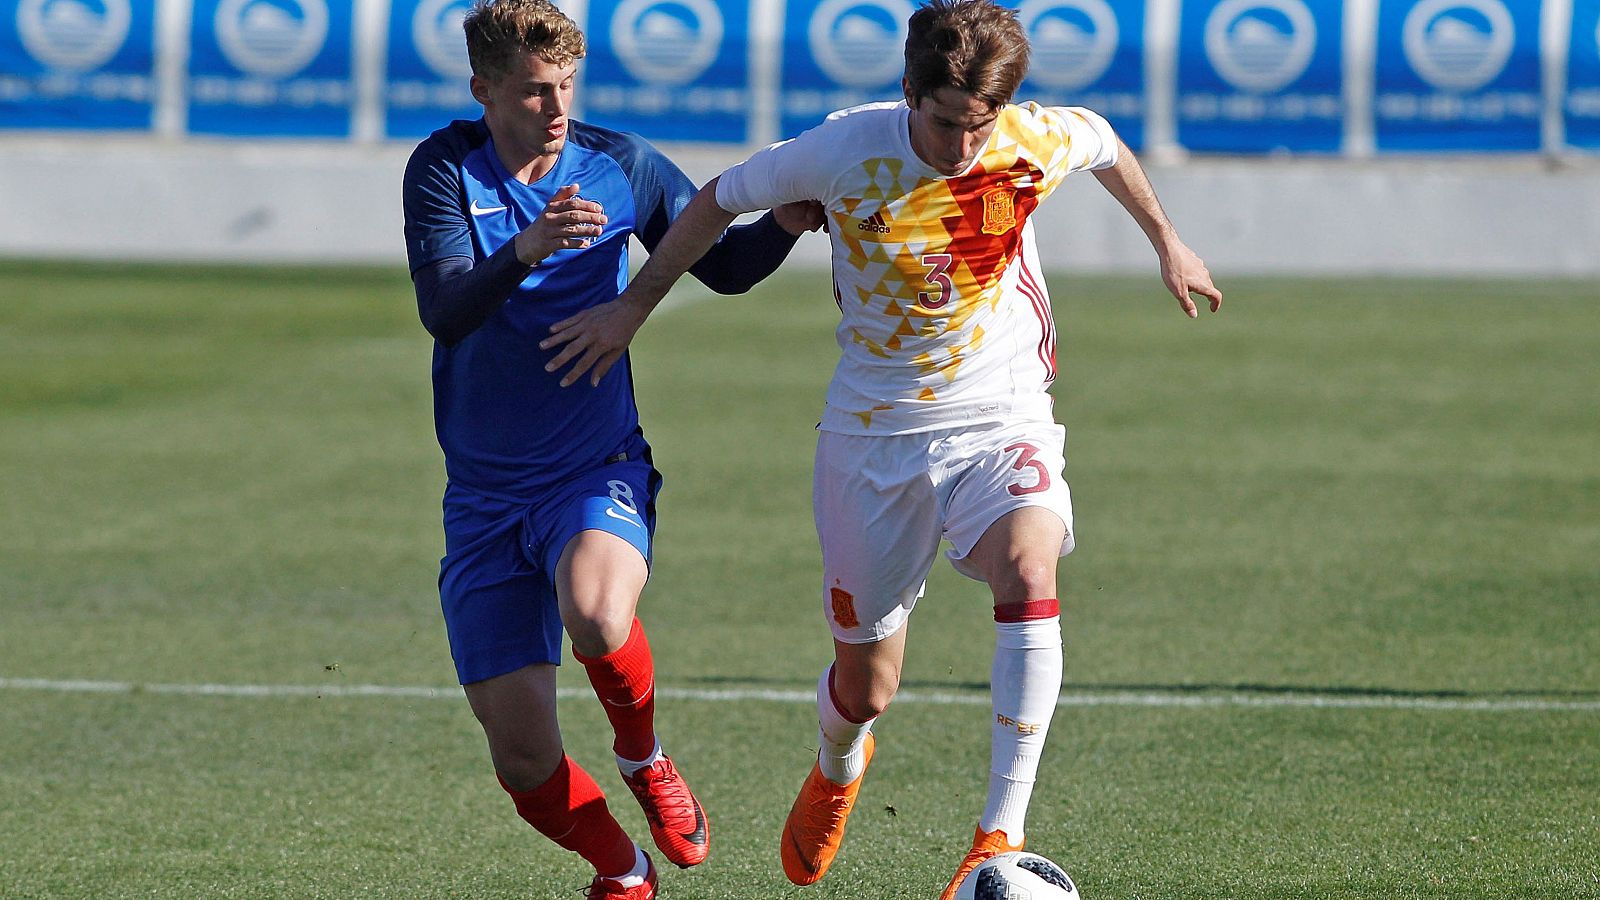 El jugador de España Miranda con el balón ante el jugador de Francia Cuisance.